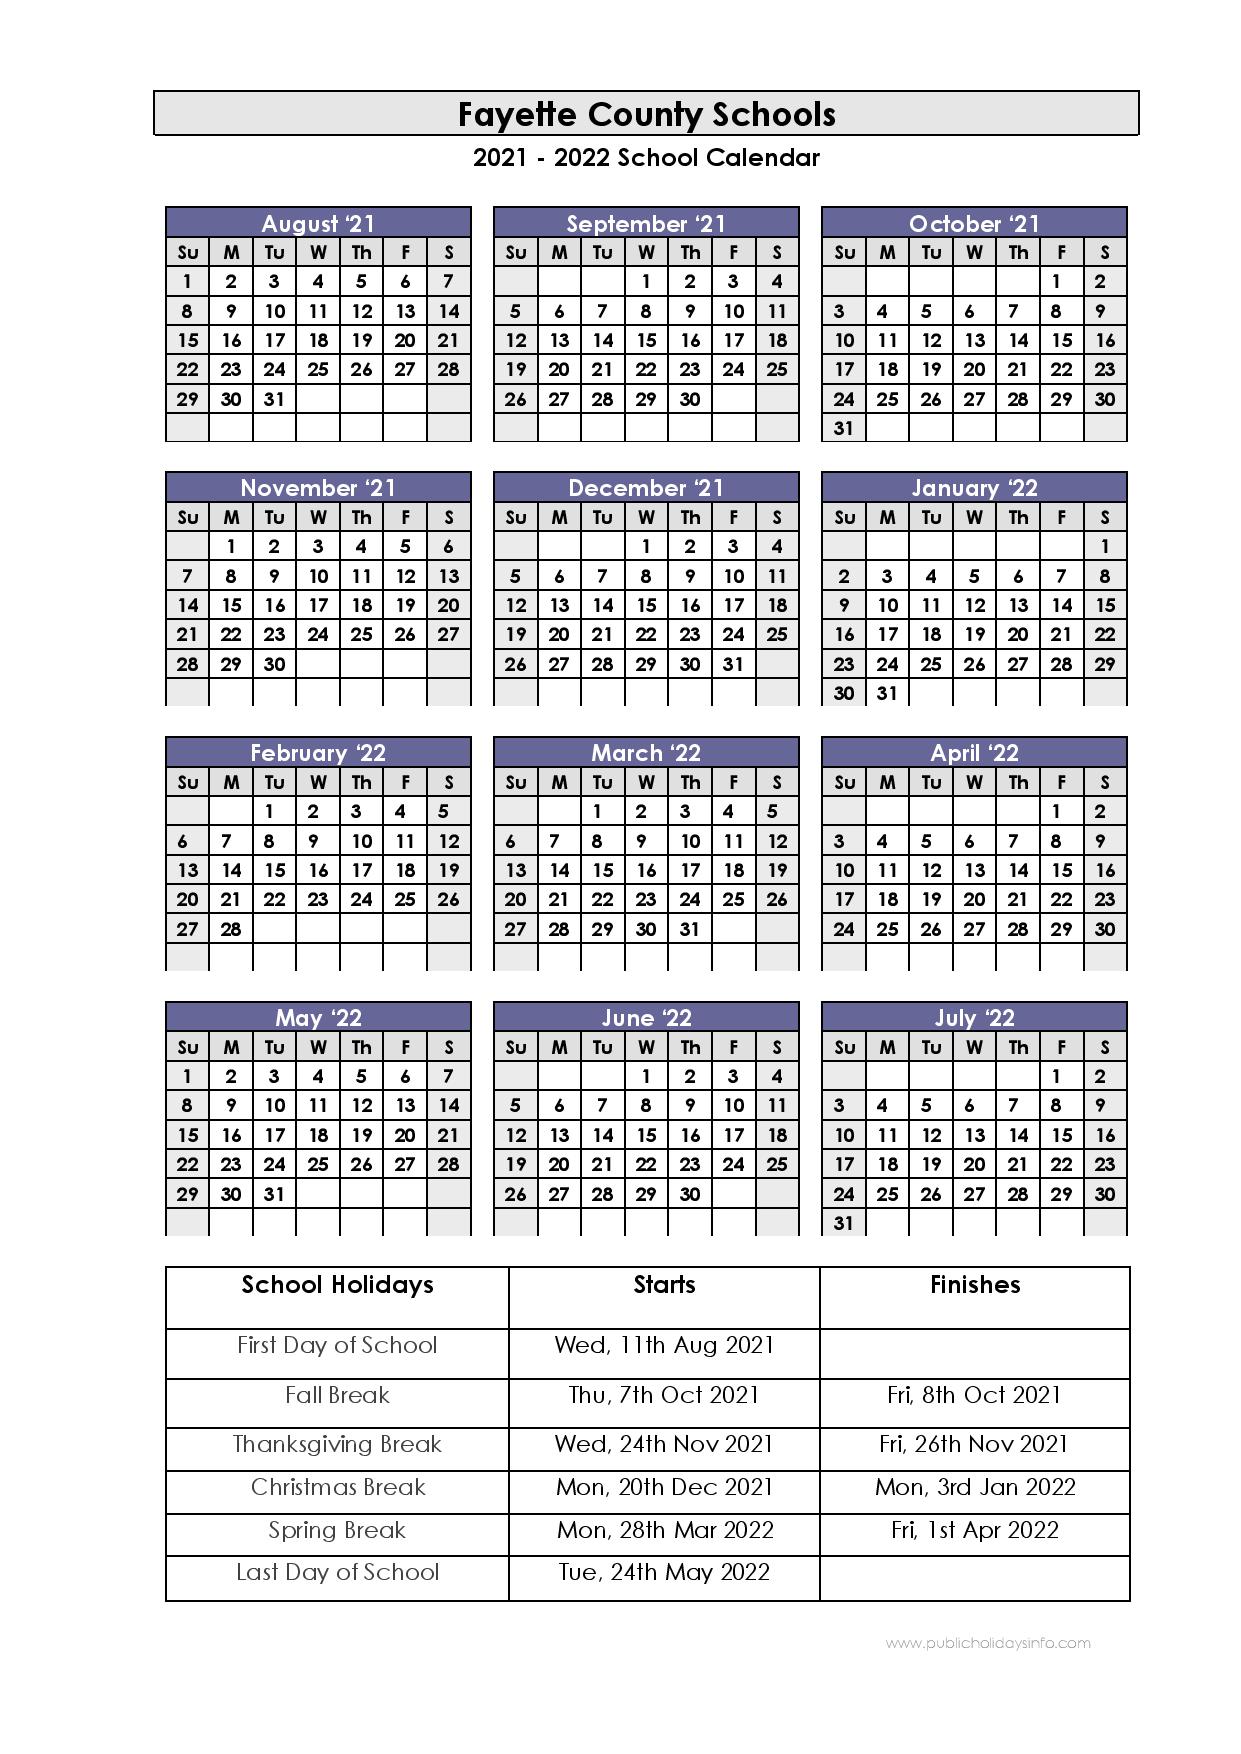 Fcps Calendar 2022 19 Fayette County Schools Calendar 2021-2022 (Kentucky)